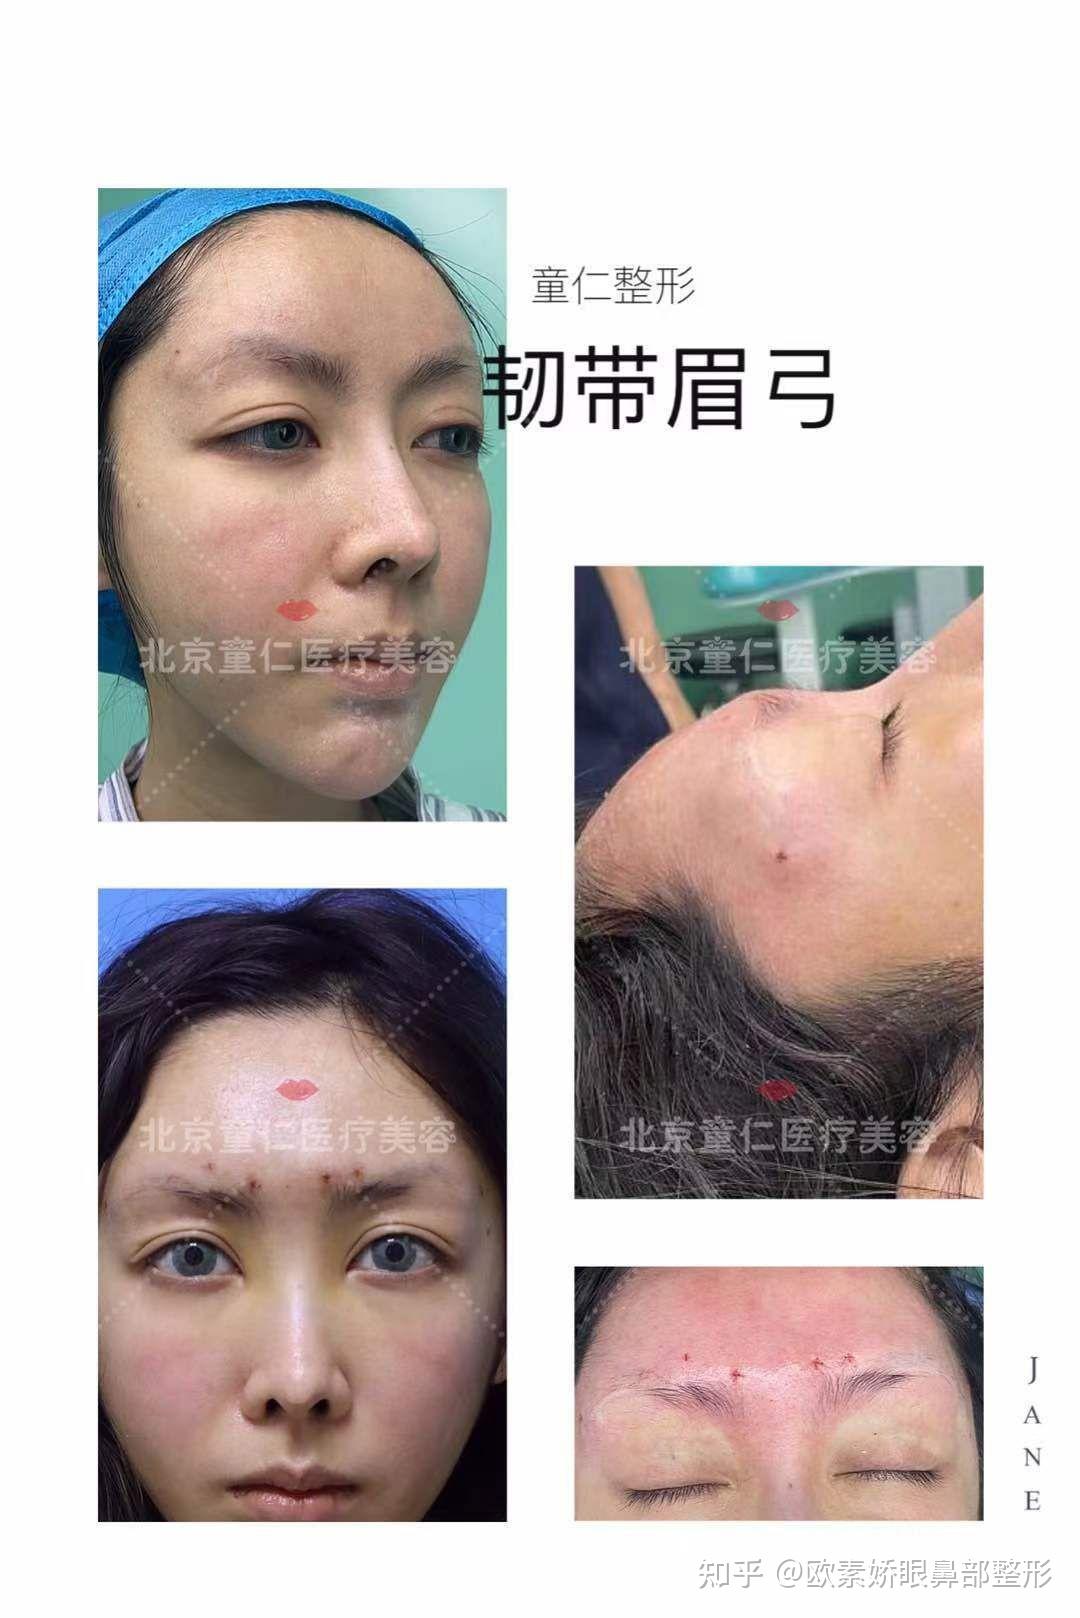 徐州市中心医院成功实施经眉弓入路微创手术 切除患者颅底肿瘤 - 全程导医网